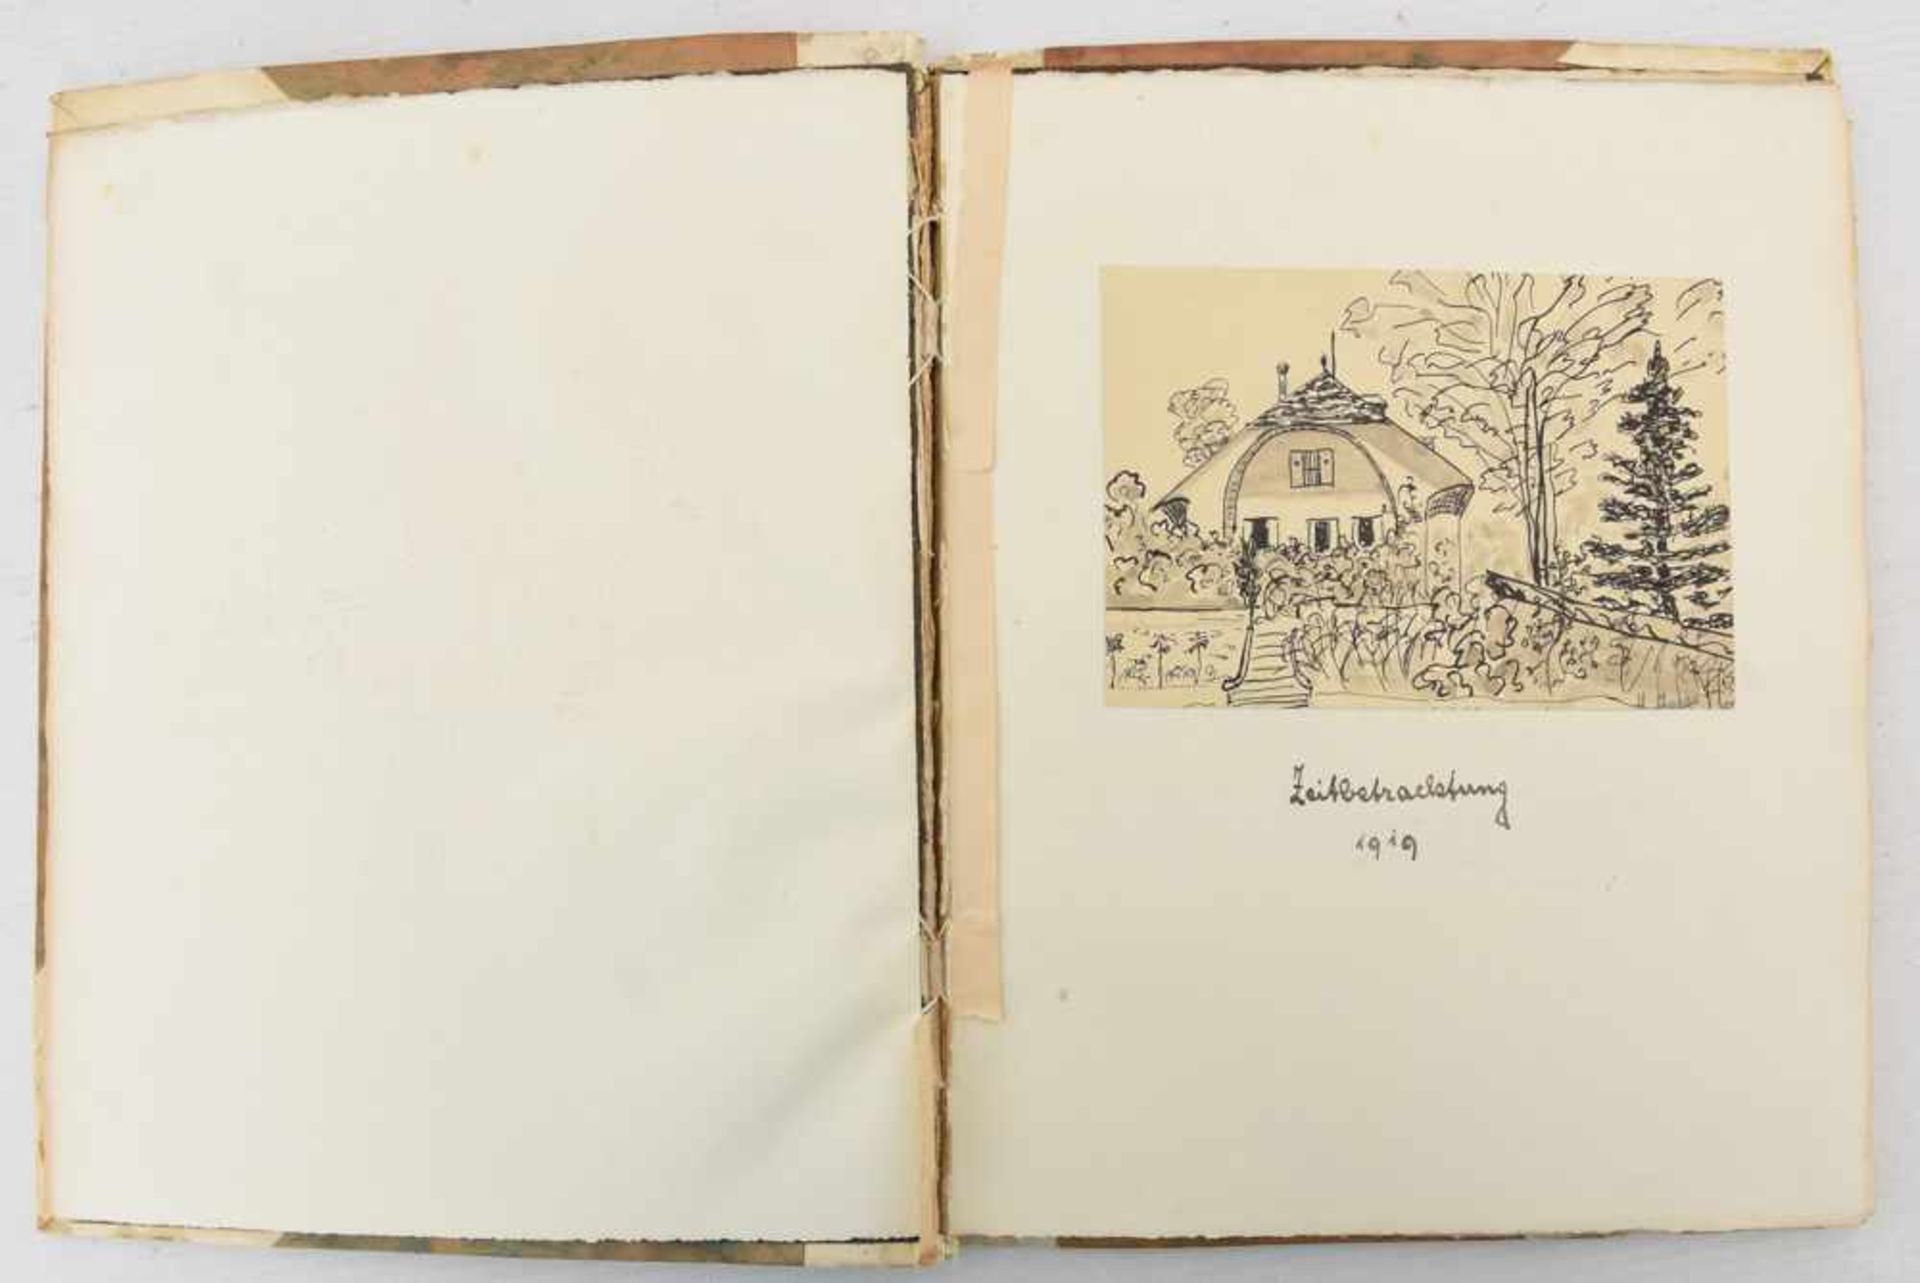 HERMANN HESSE, Gedichte-Originalmanuskript mit Aquarellen. Deutschland, Januar, 1919.Auf der